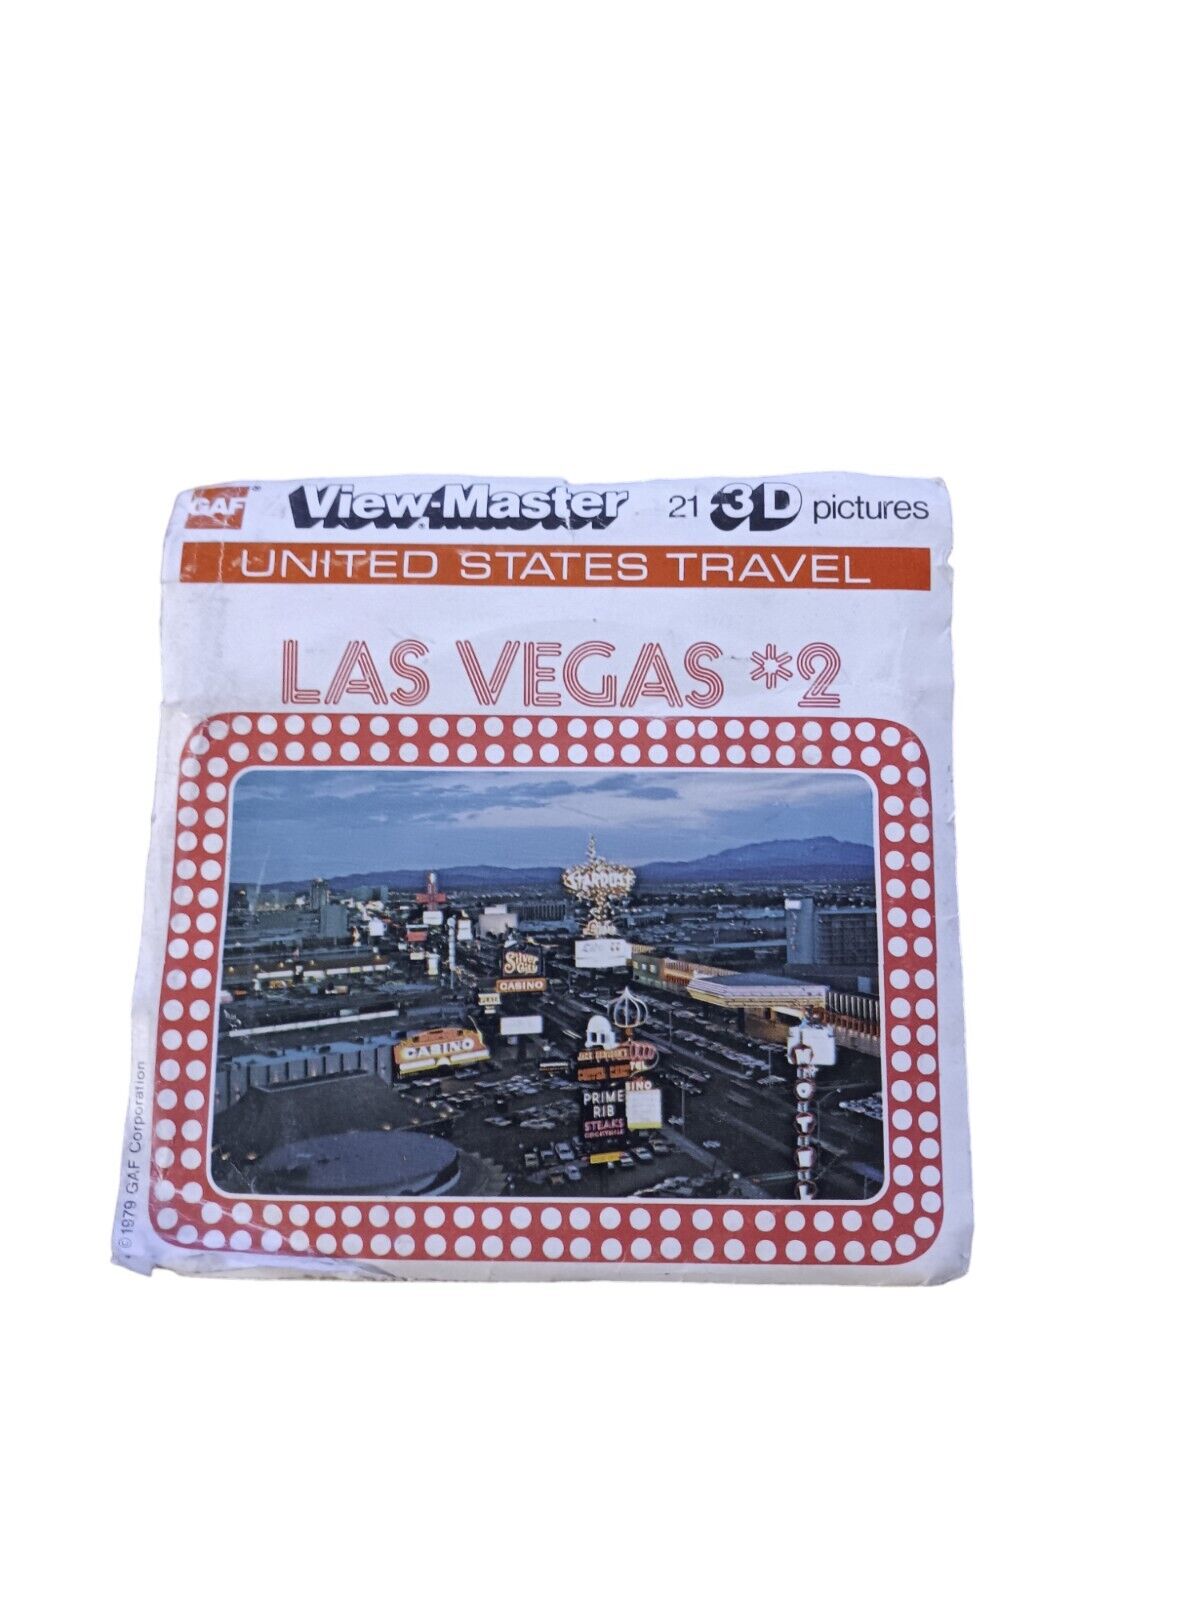 Vintage View Master Las Vegas *2 Slides